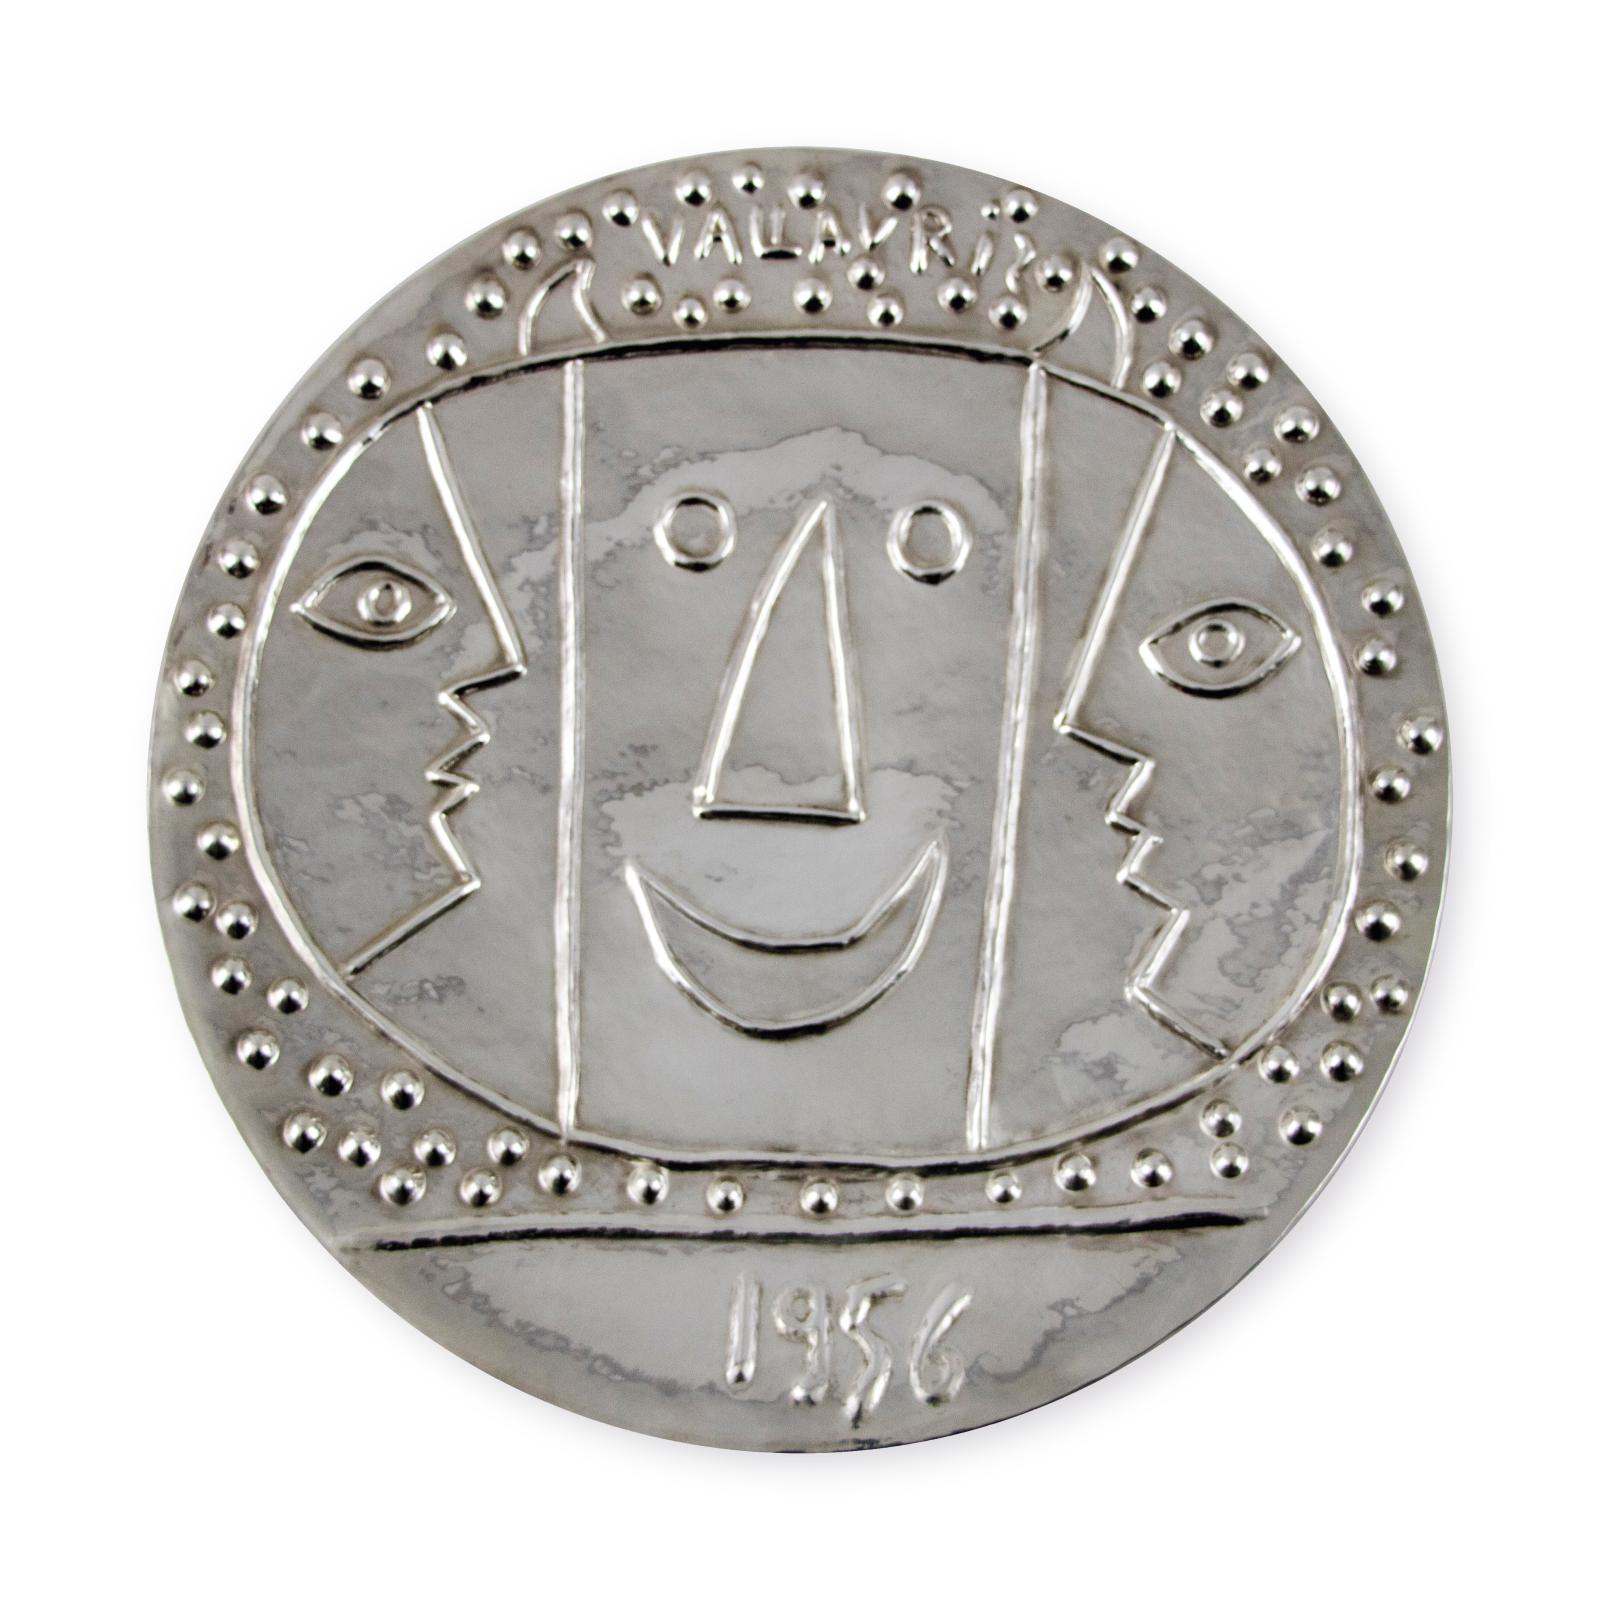 Pablo Picasso (1881-1973), Vallauris - 1956, plat en argent massif, Pierre Hugo orfèvre (poinçon de maître), signé et numéroté 15/20 au dos, diam. 41,